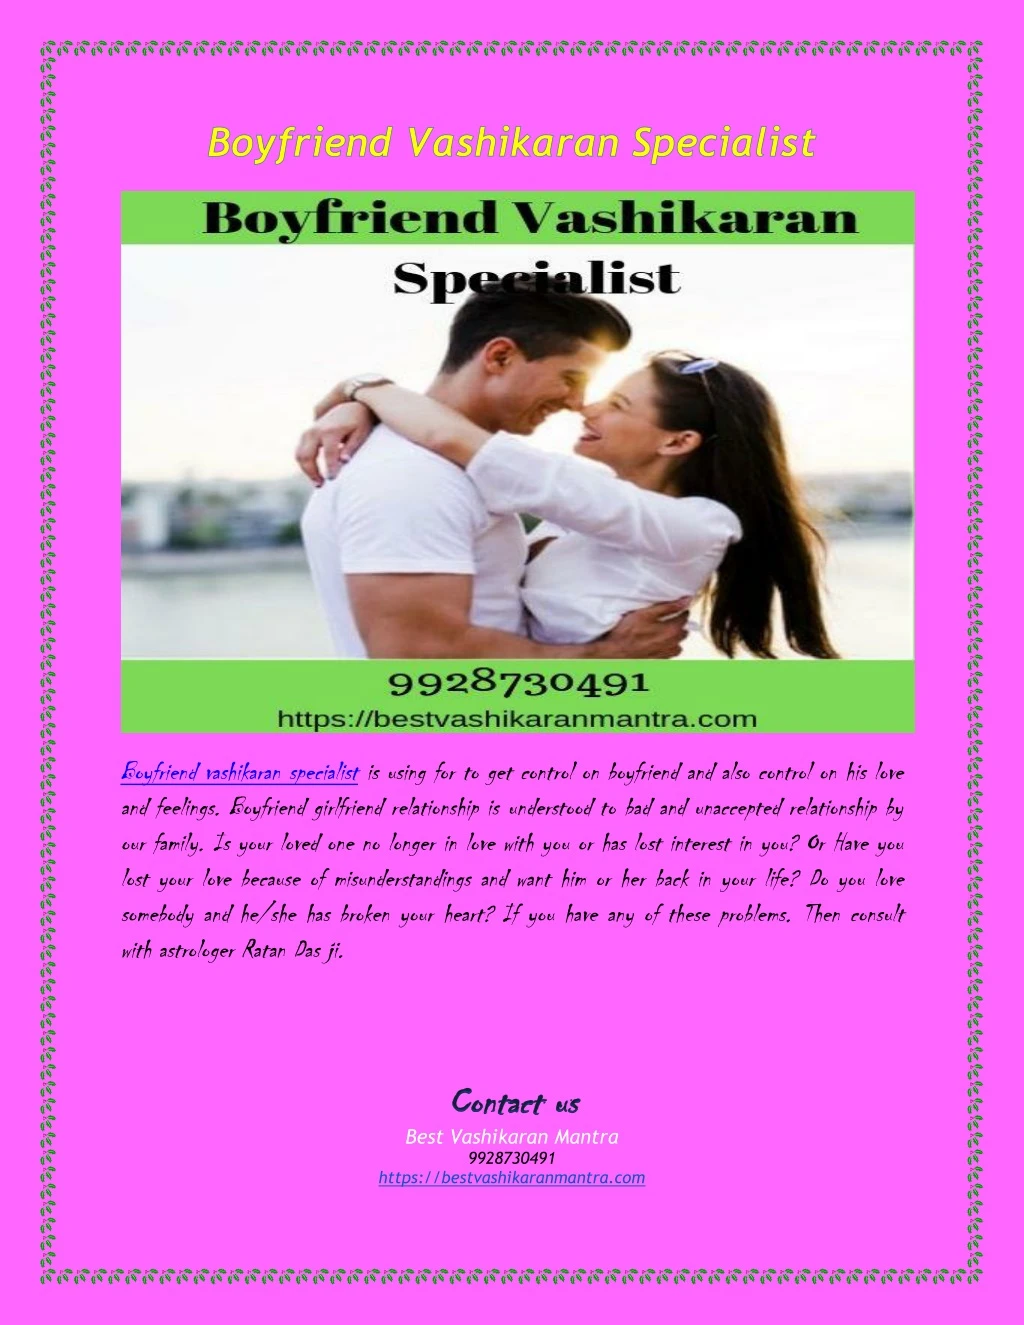 boyfriend vashikaran specialist is using